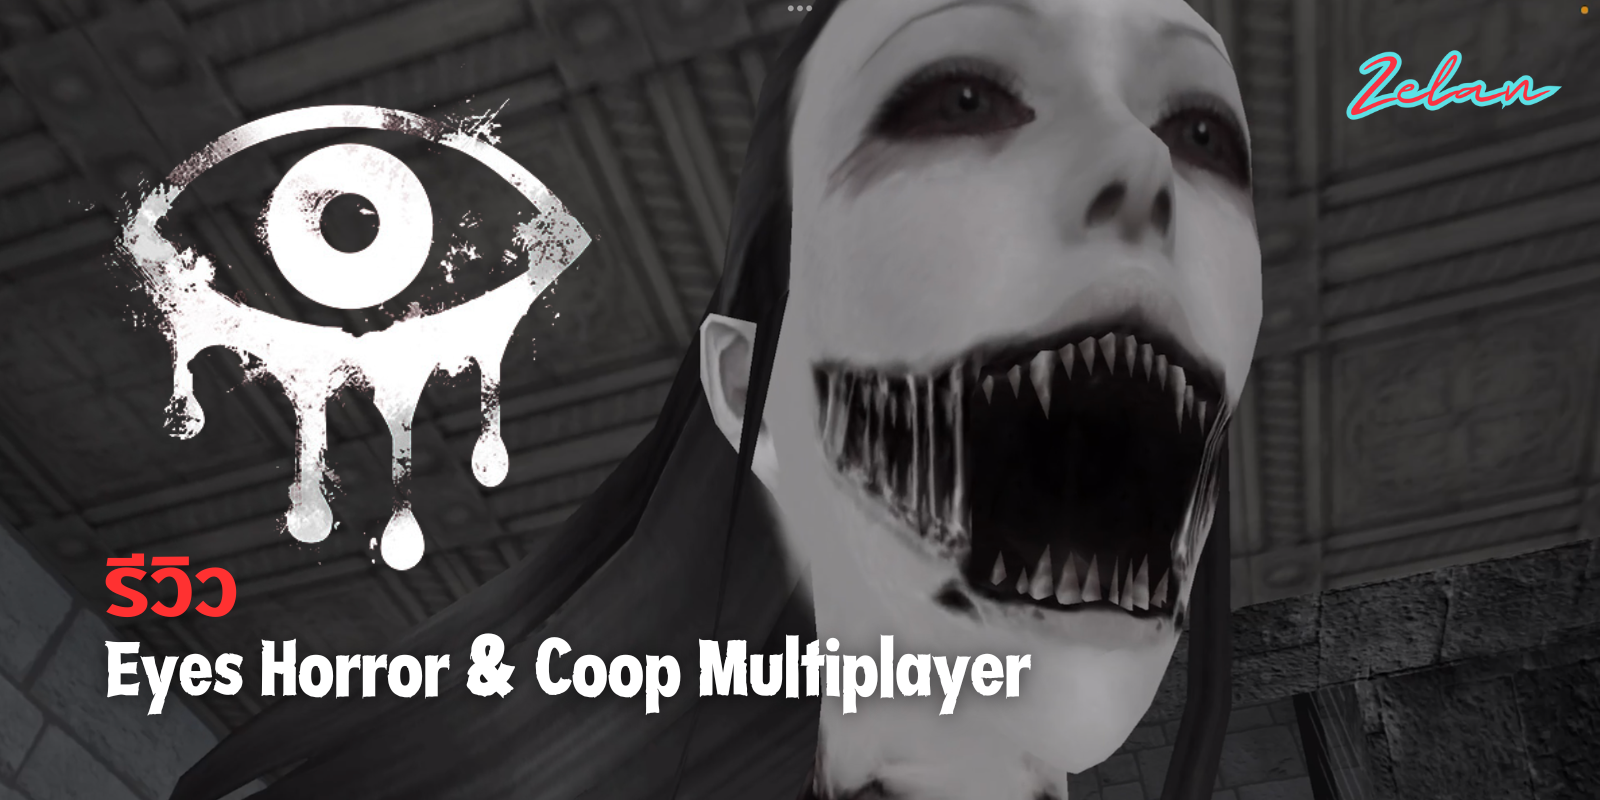 รีวิว Eyes Horror & Coop Multiplayer เกมสยองขวัญบนมือถือ เล่นกับ